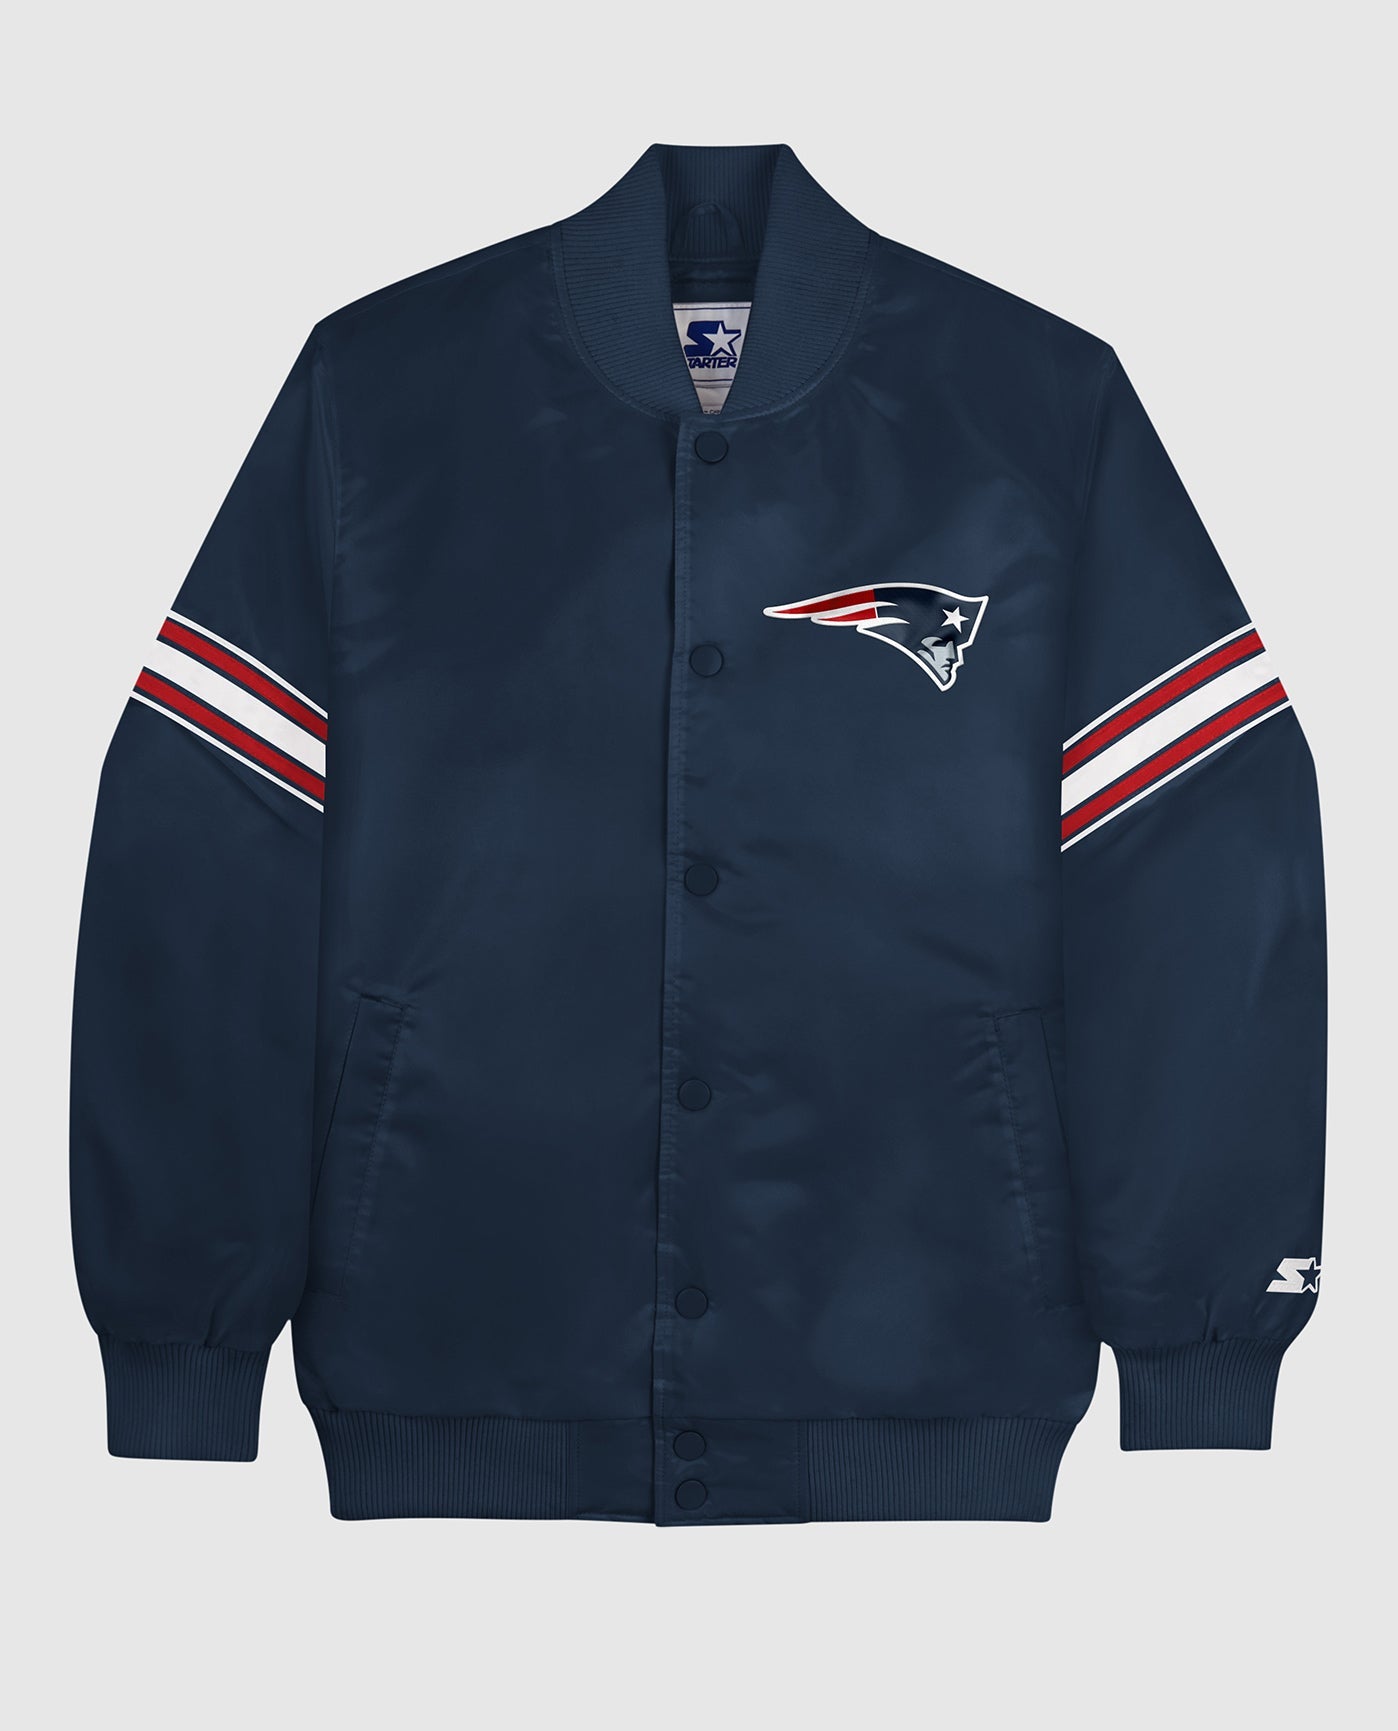 NFL Kansas city chiefs Satin Varsity Jacket Embroidery logos Free